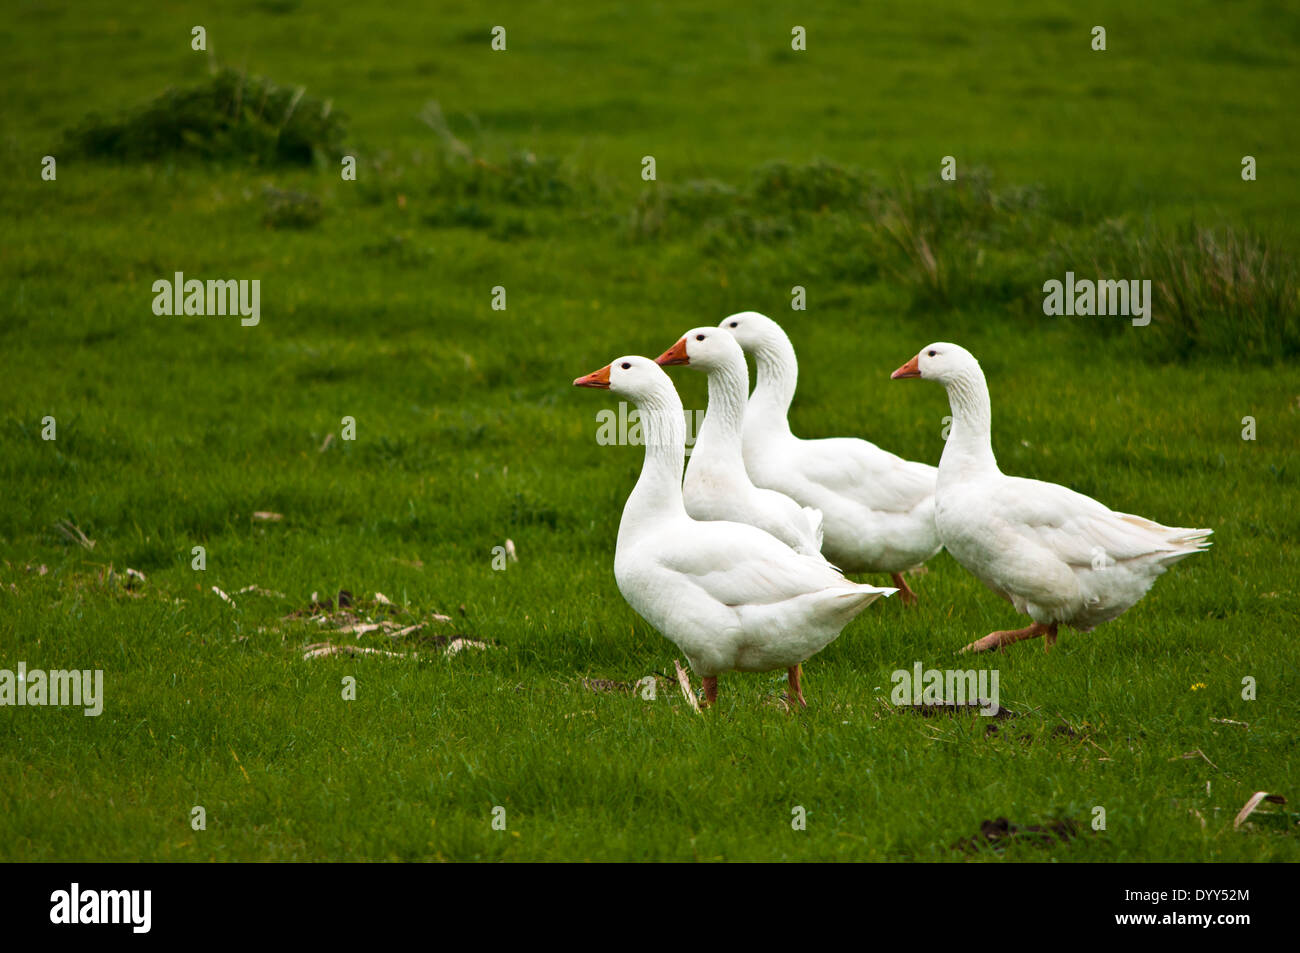 Troupeau d'oies blanches entrant dans l'eau de la rivière Wensum Banque D'Images